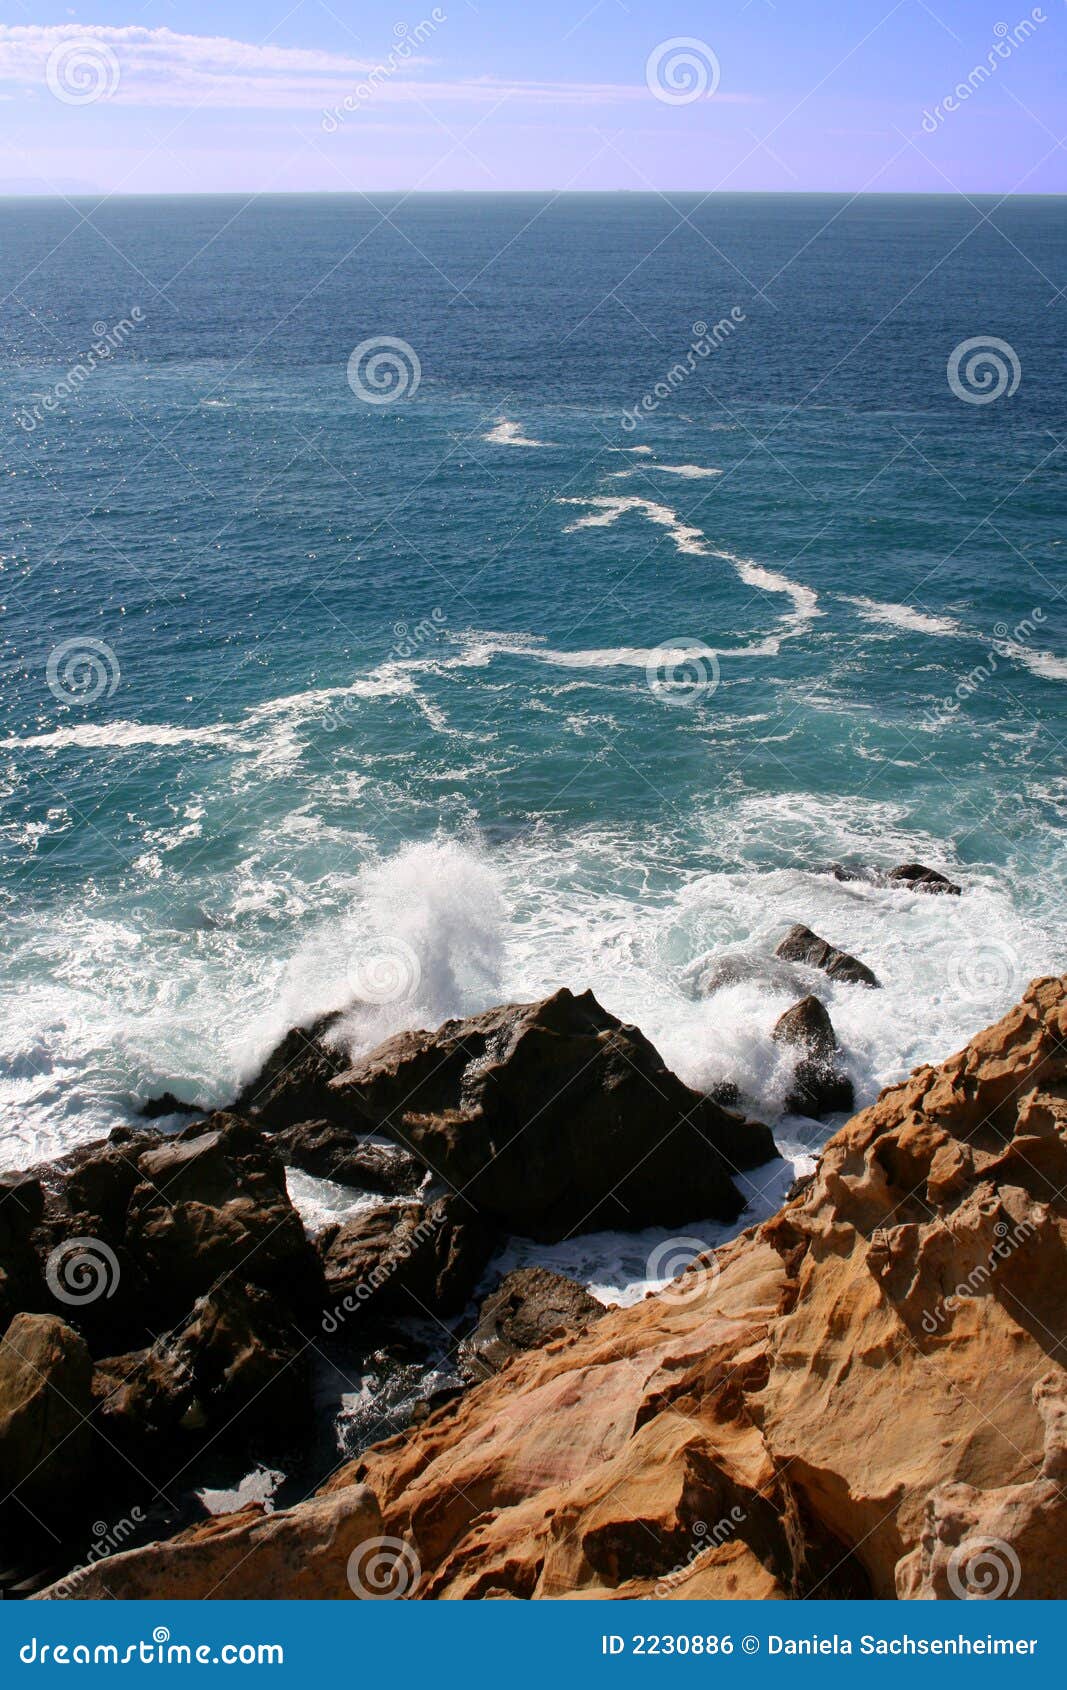 rocky coast of bolonia